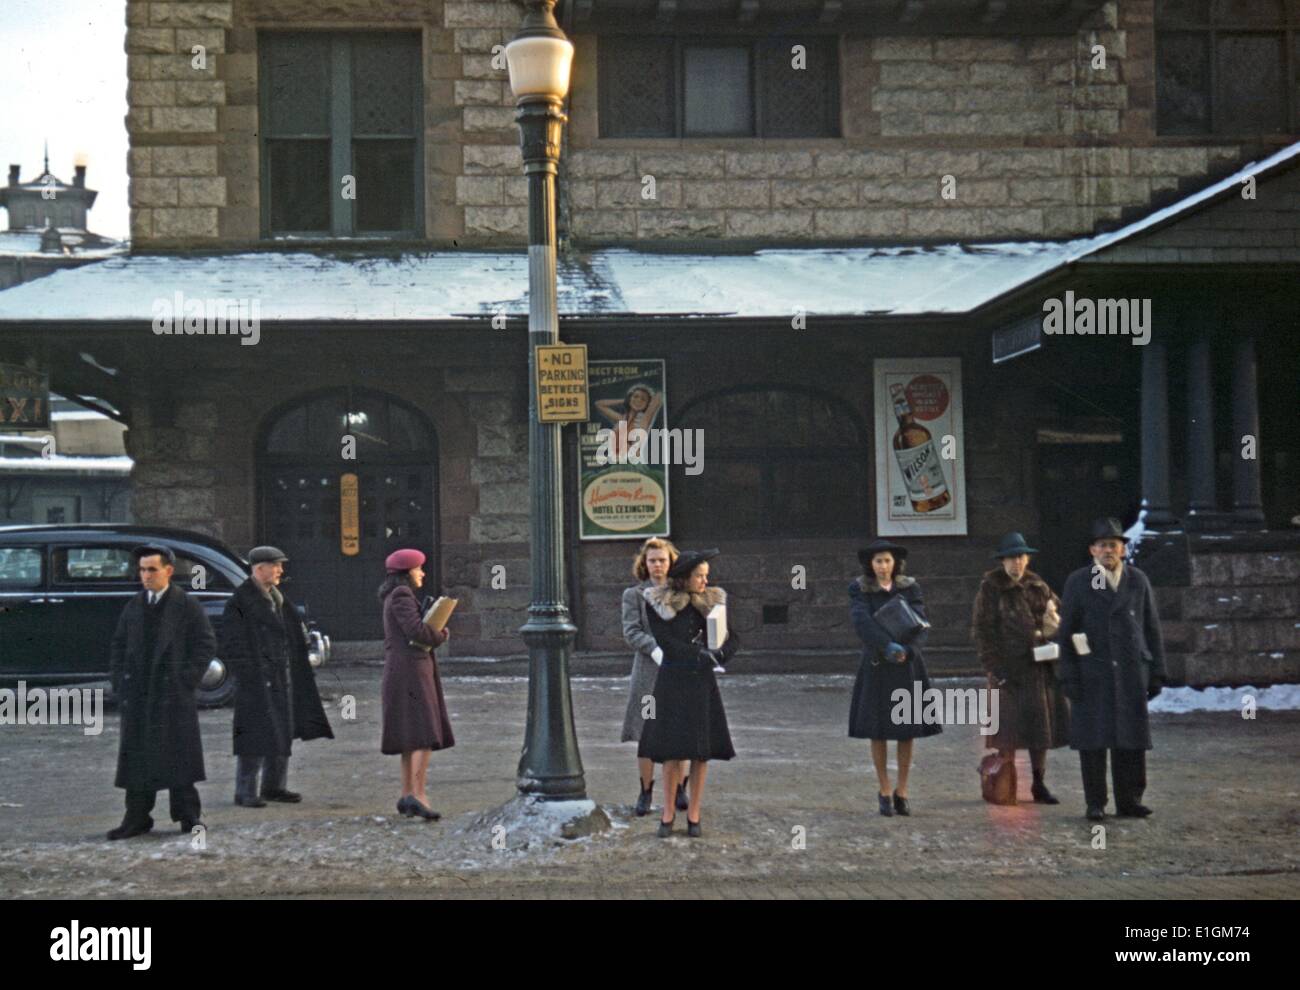 Farbfoto der Pendler, die gerade aus dem Bahnhof kommt, warten auf den Bus nach Hause, Lowell, Massachusetts, USA. Vom 1941 Stockfoto